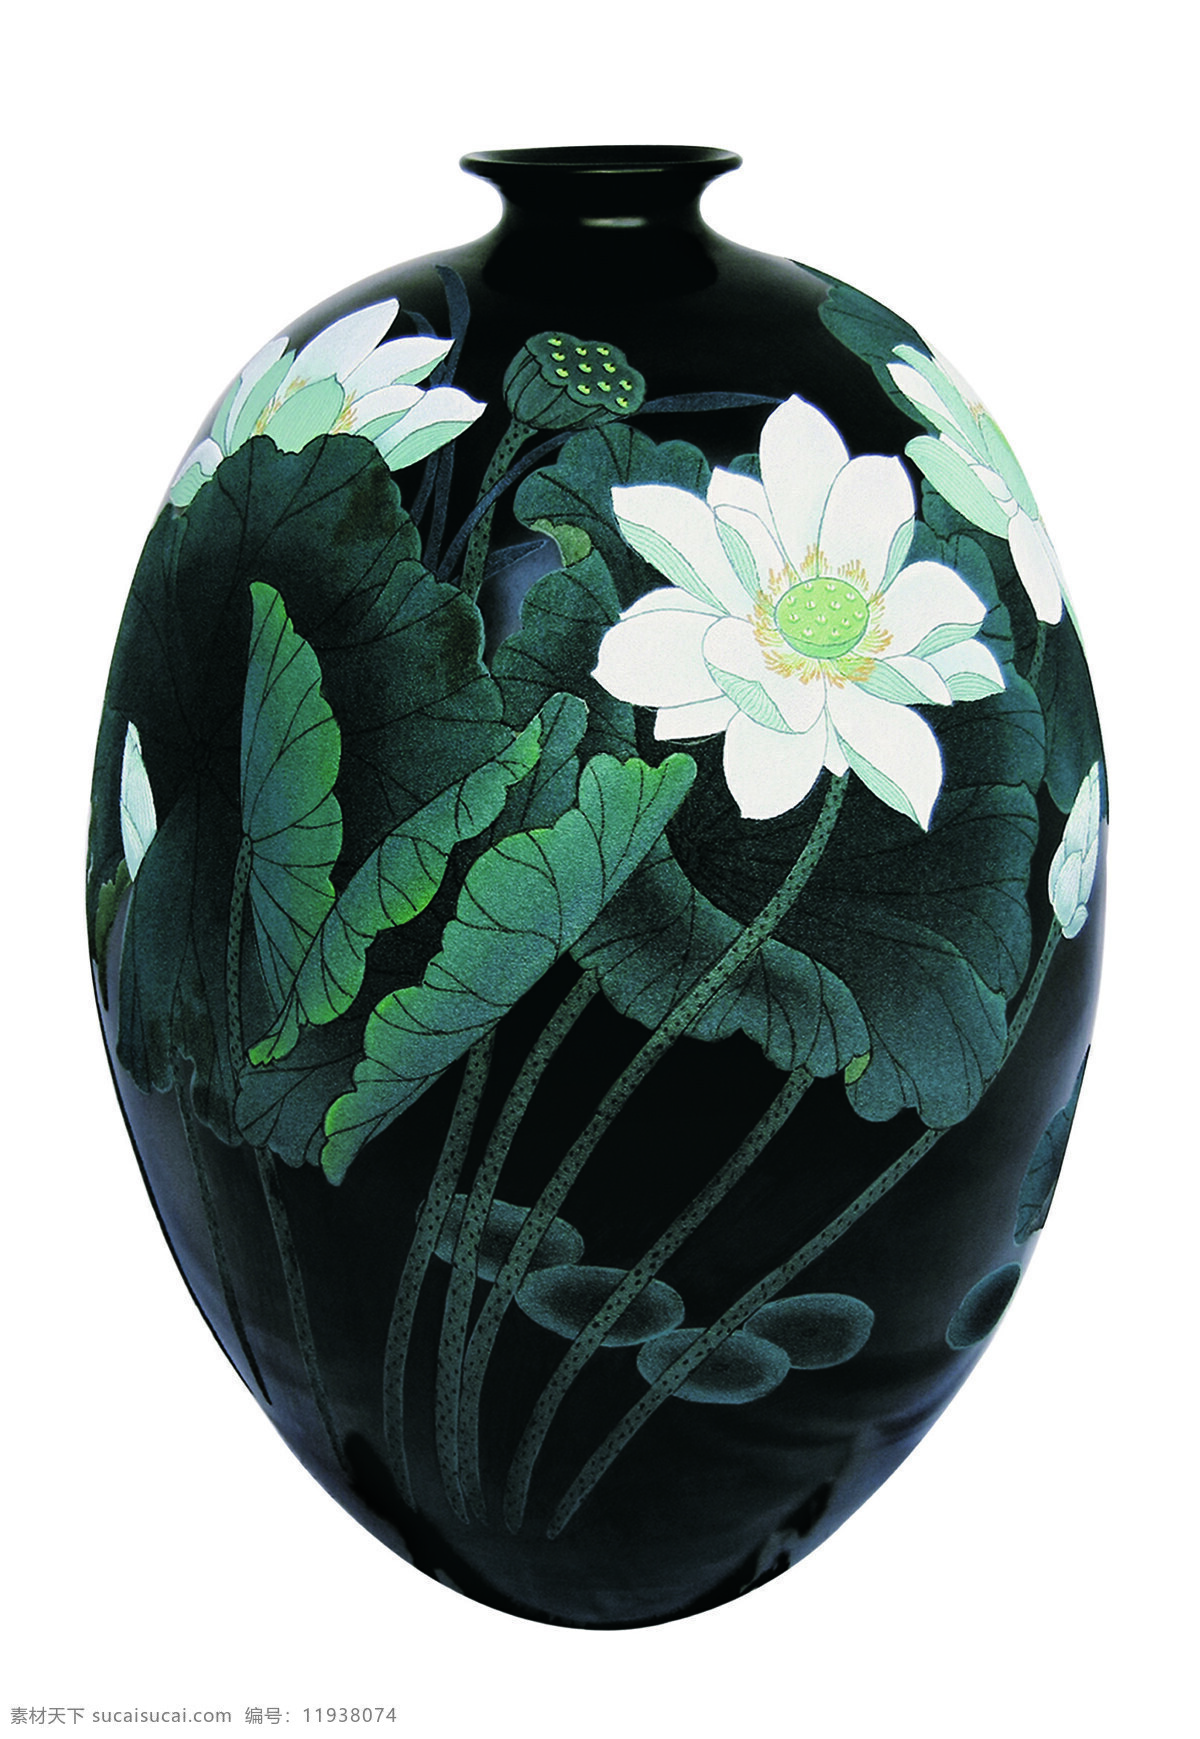 夏荷 黑陶 陶瓷 古物 花瓶 传统文化 文化艺术